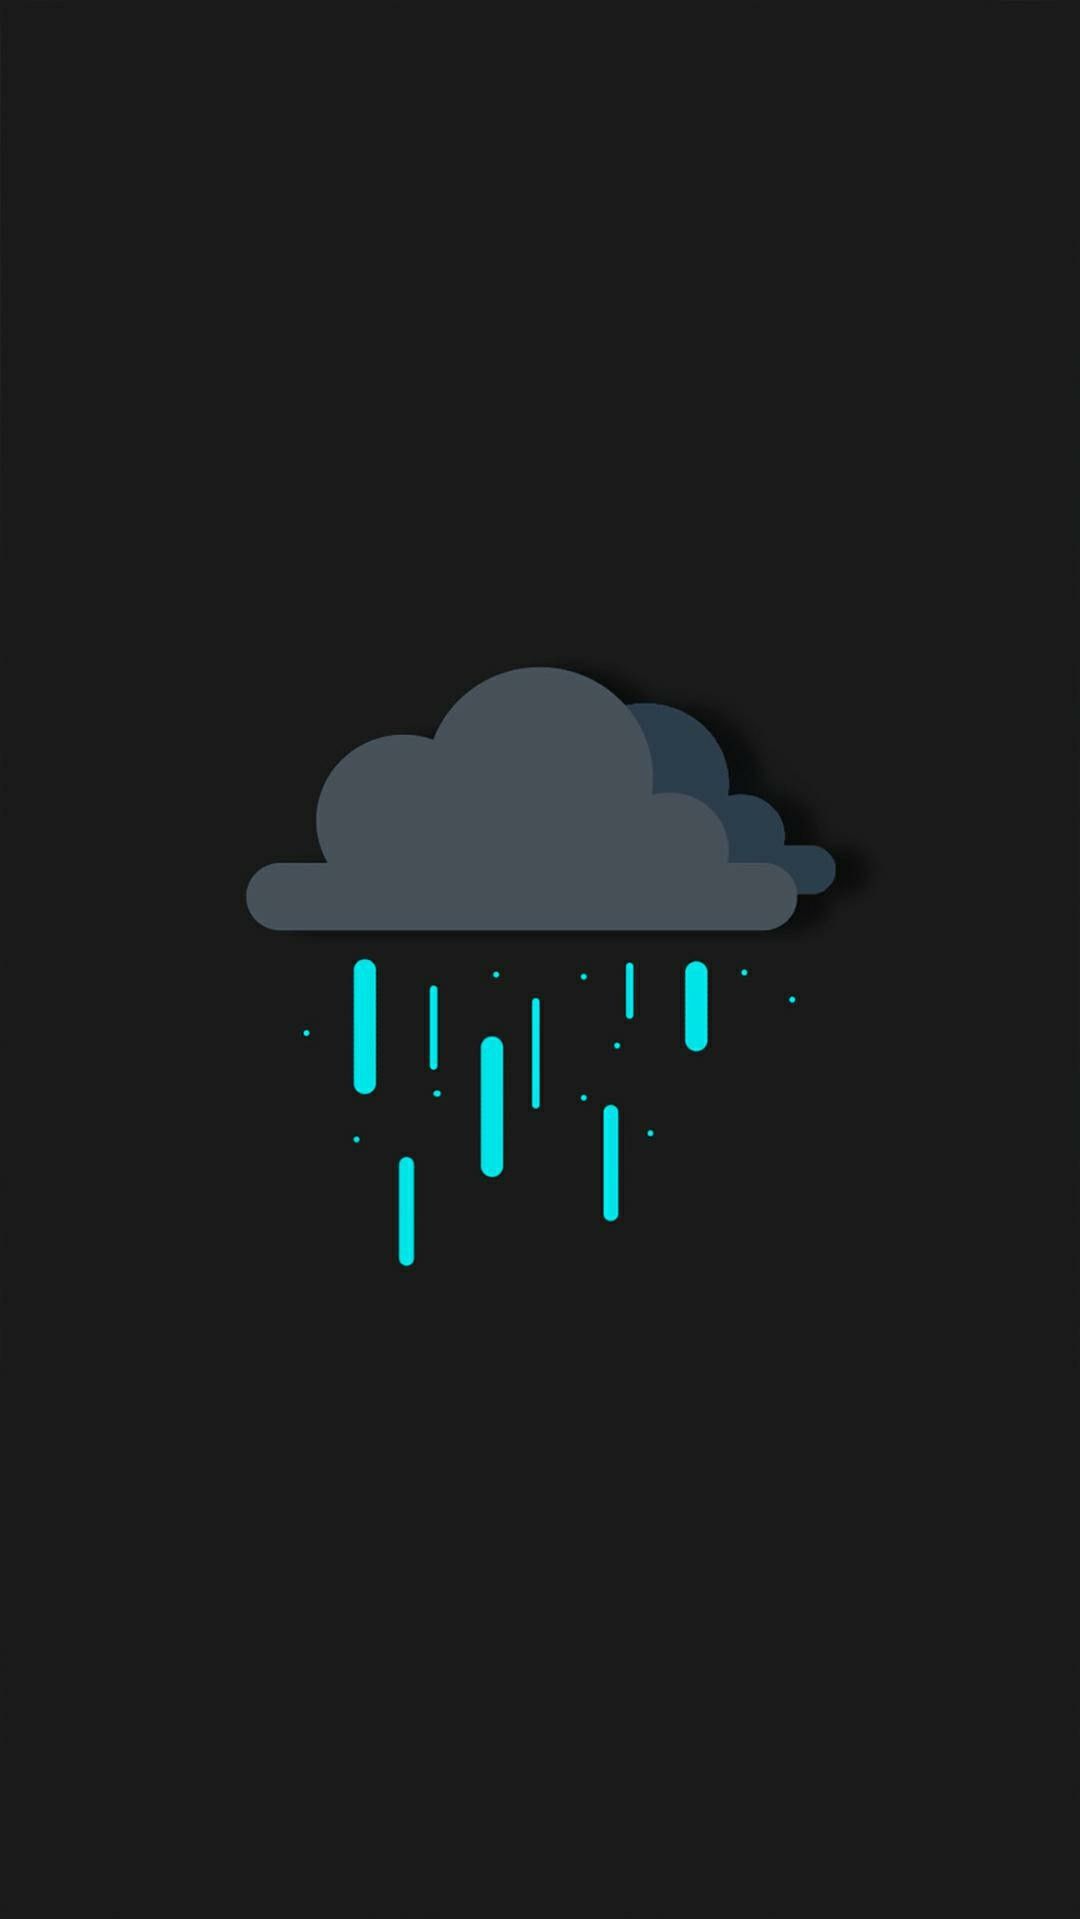 Digital Clouds Rain iPhone Wallpaper